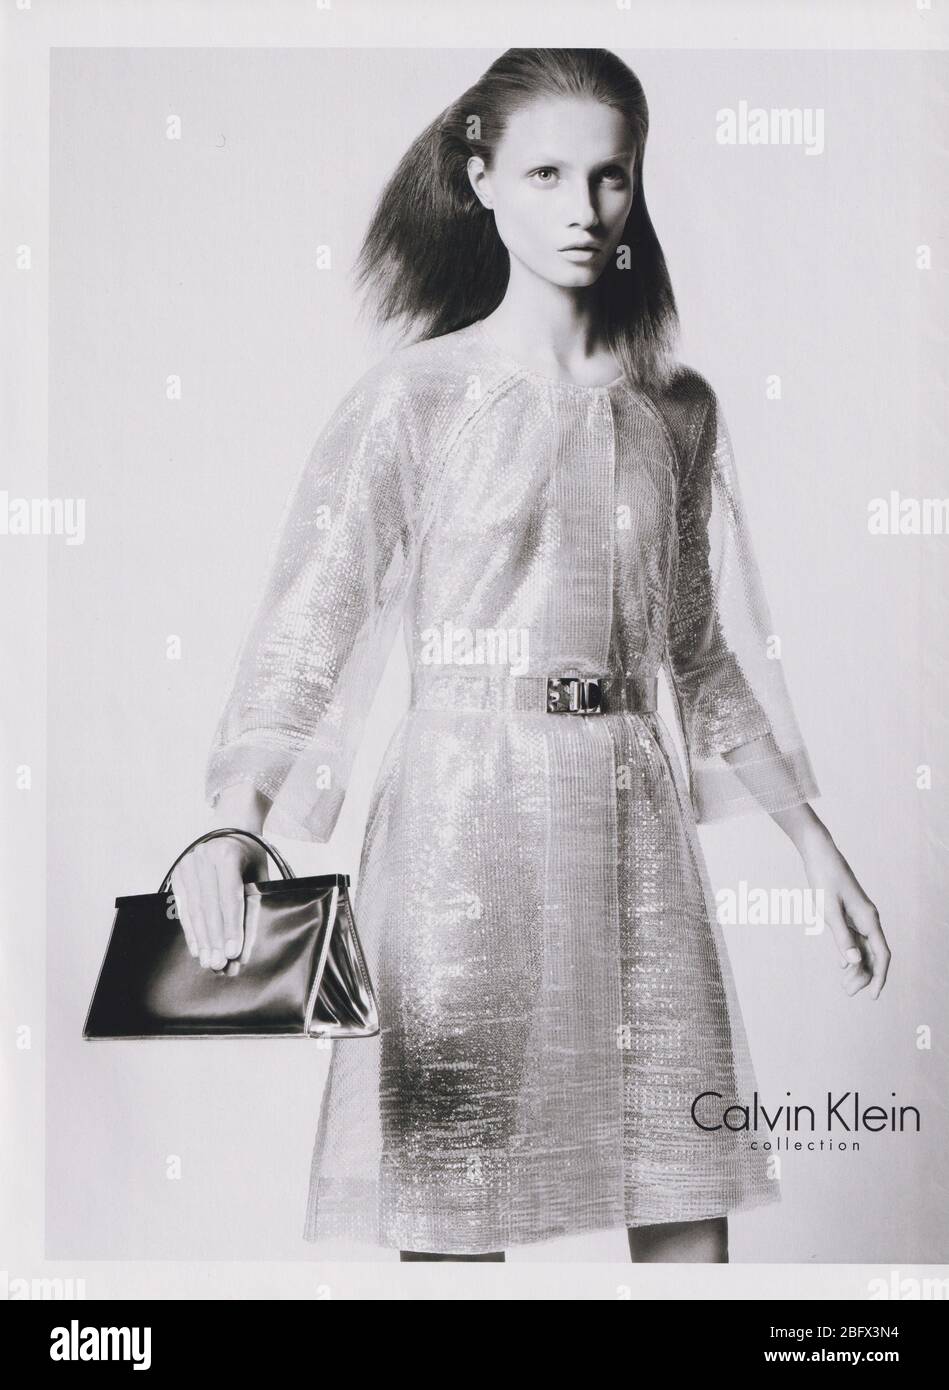 Plakat Werbung Calvin Klein Modehaus Mit Anna Selezneva In Papiermagazin Aus 09 Jahr Werbung Kreative 00er Ck Anzeige Stockfotografie Alamy